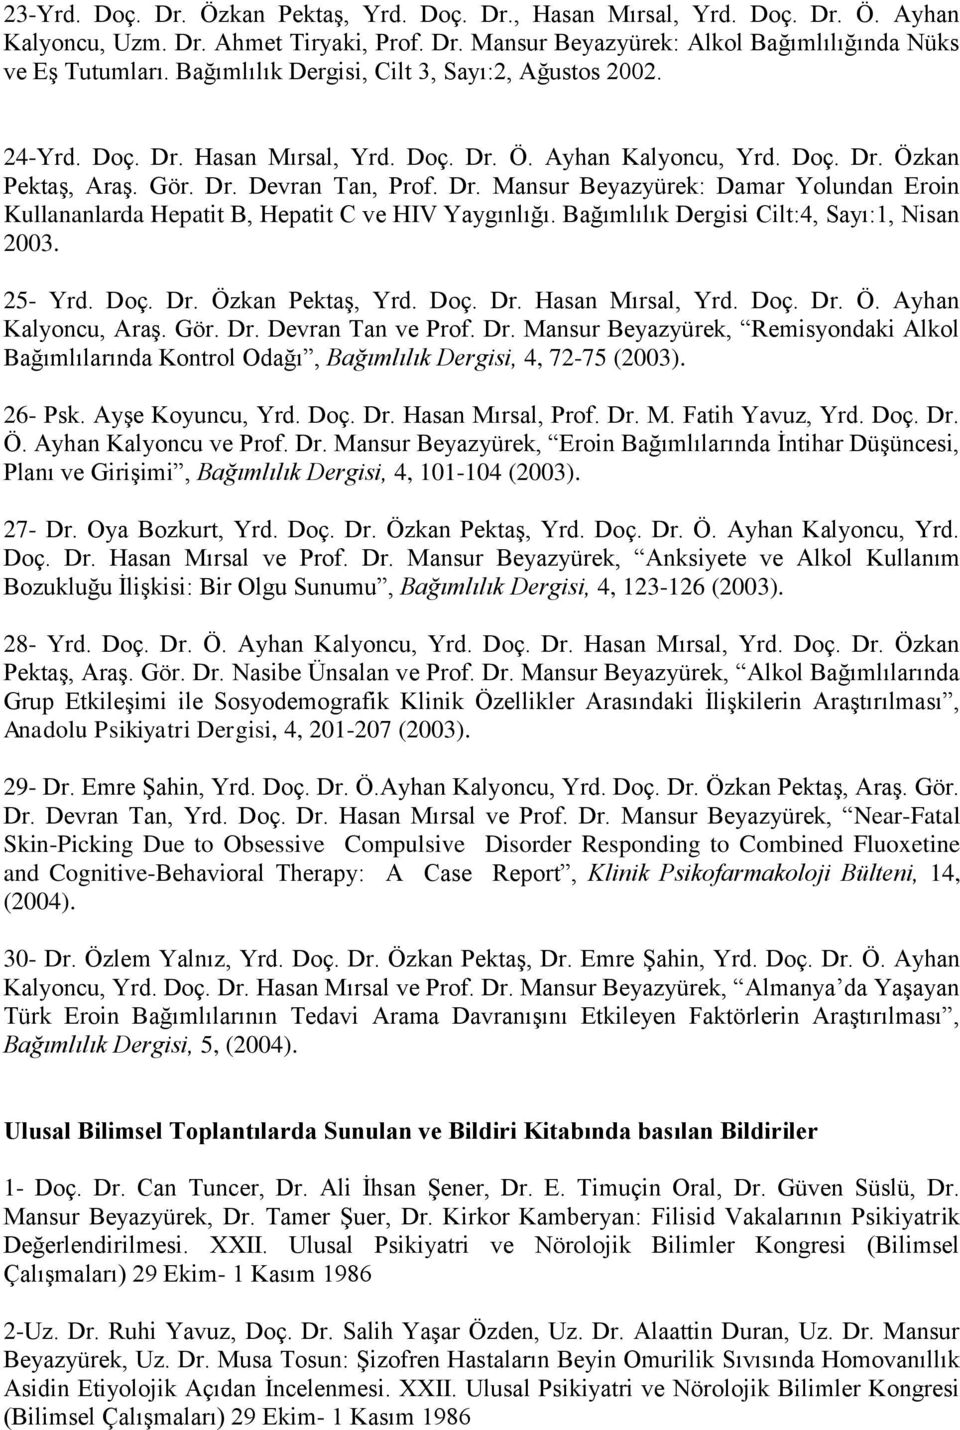 Bağımlılık Dergisi Cilt:4, Sayı:1, Nisan 2003. 25- Yrd. Doç. Dr. Özkan Pektaş, Yrd. Doç. Dr. Hasan Mırsal, Yrd. Doç. Dr. Ö. Ayhan Kalyoncu, Araş. Gör. Dr. Devran Tan ve Prof. Dr. Mansur Beyazyürek, Remisyondaki Alkol Bağımlılarında Kontrol Odağı, Bağımlılık Dergisi, 4, 72-75 (2003).